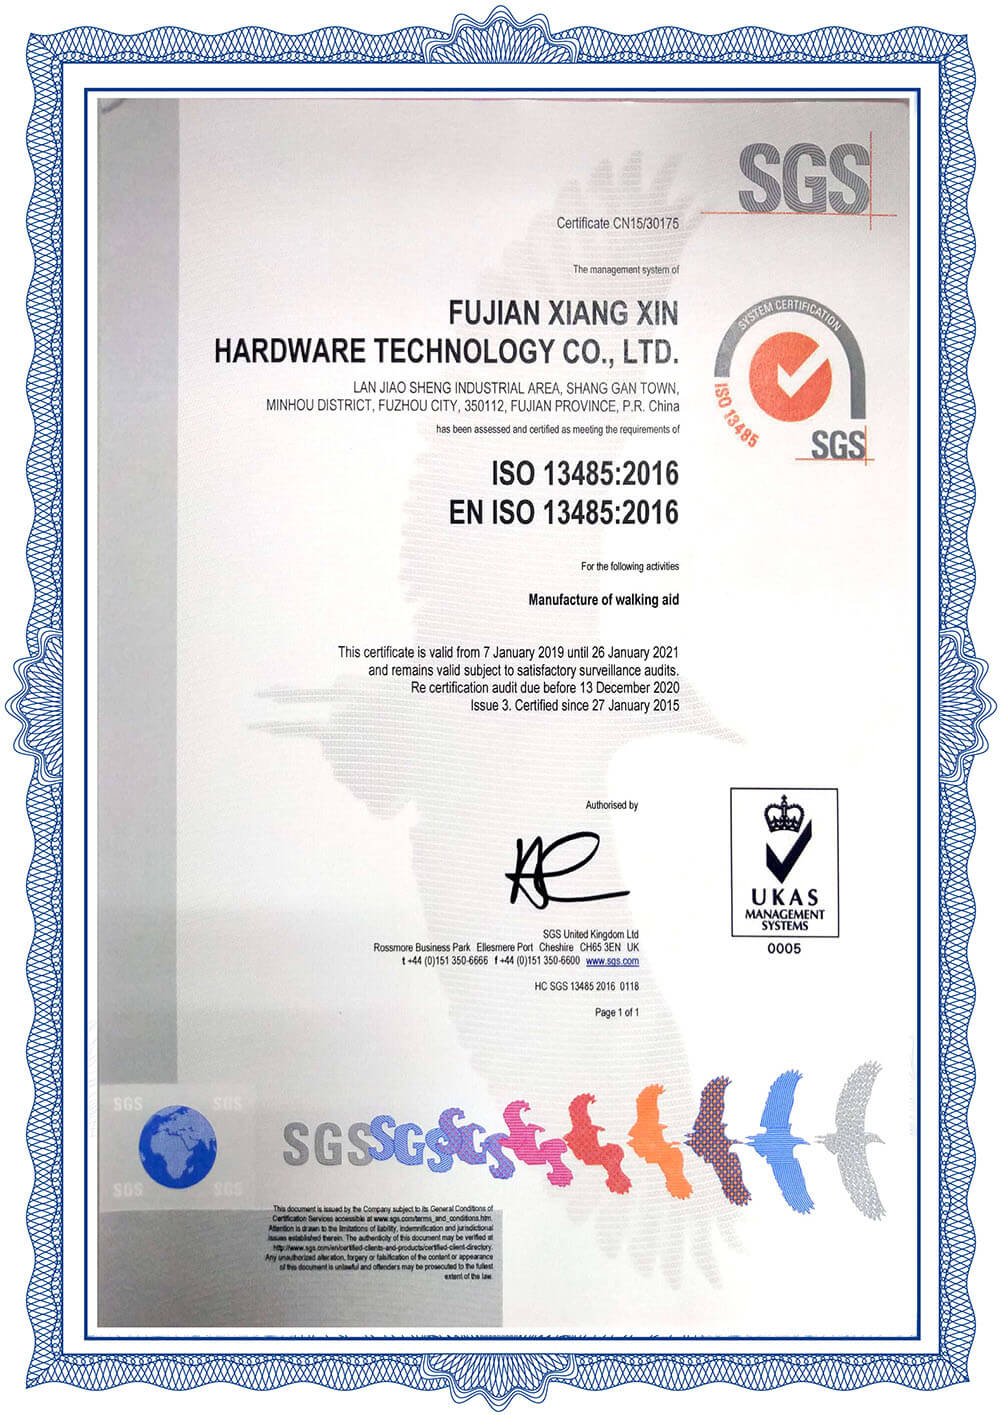 Certificado-2